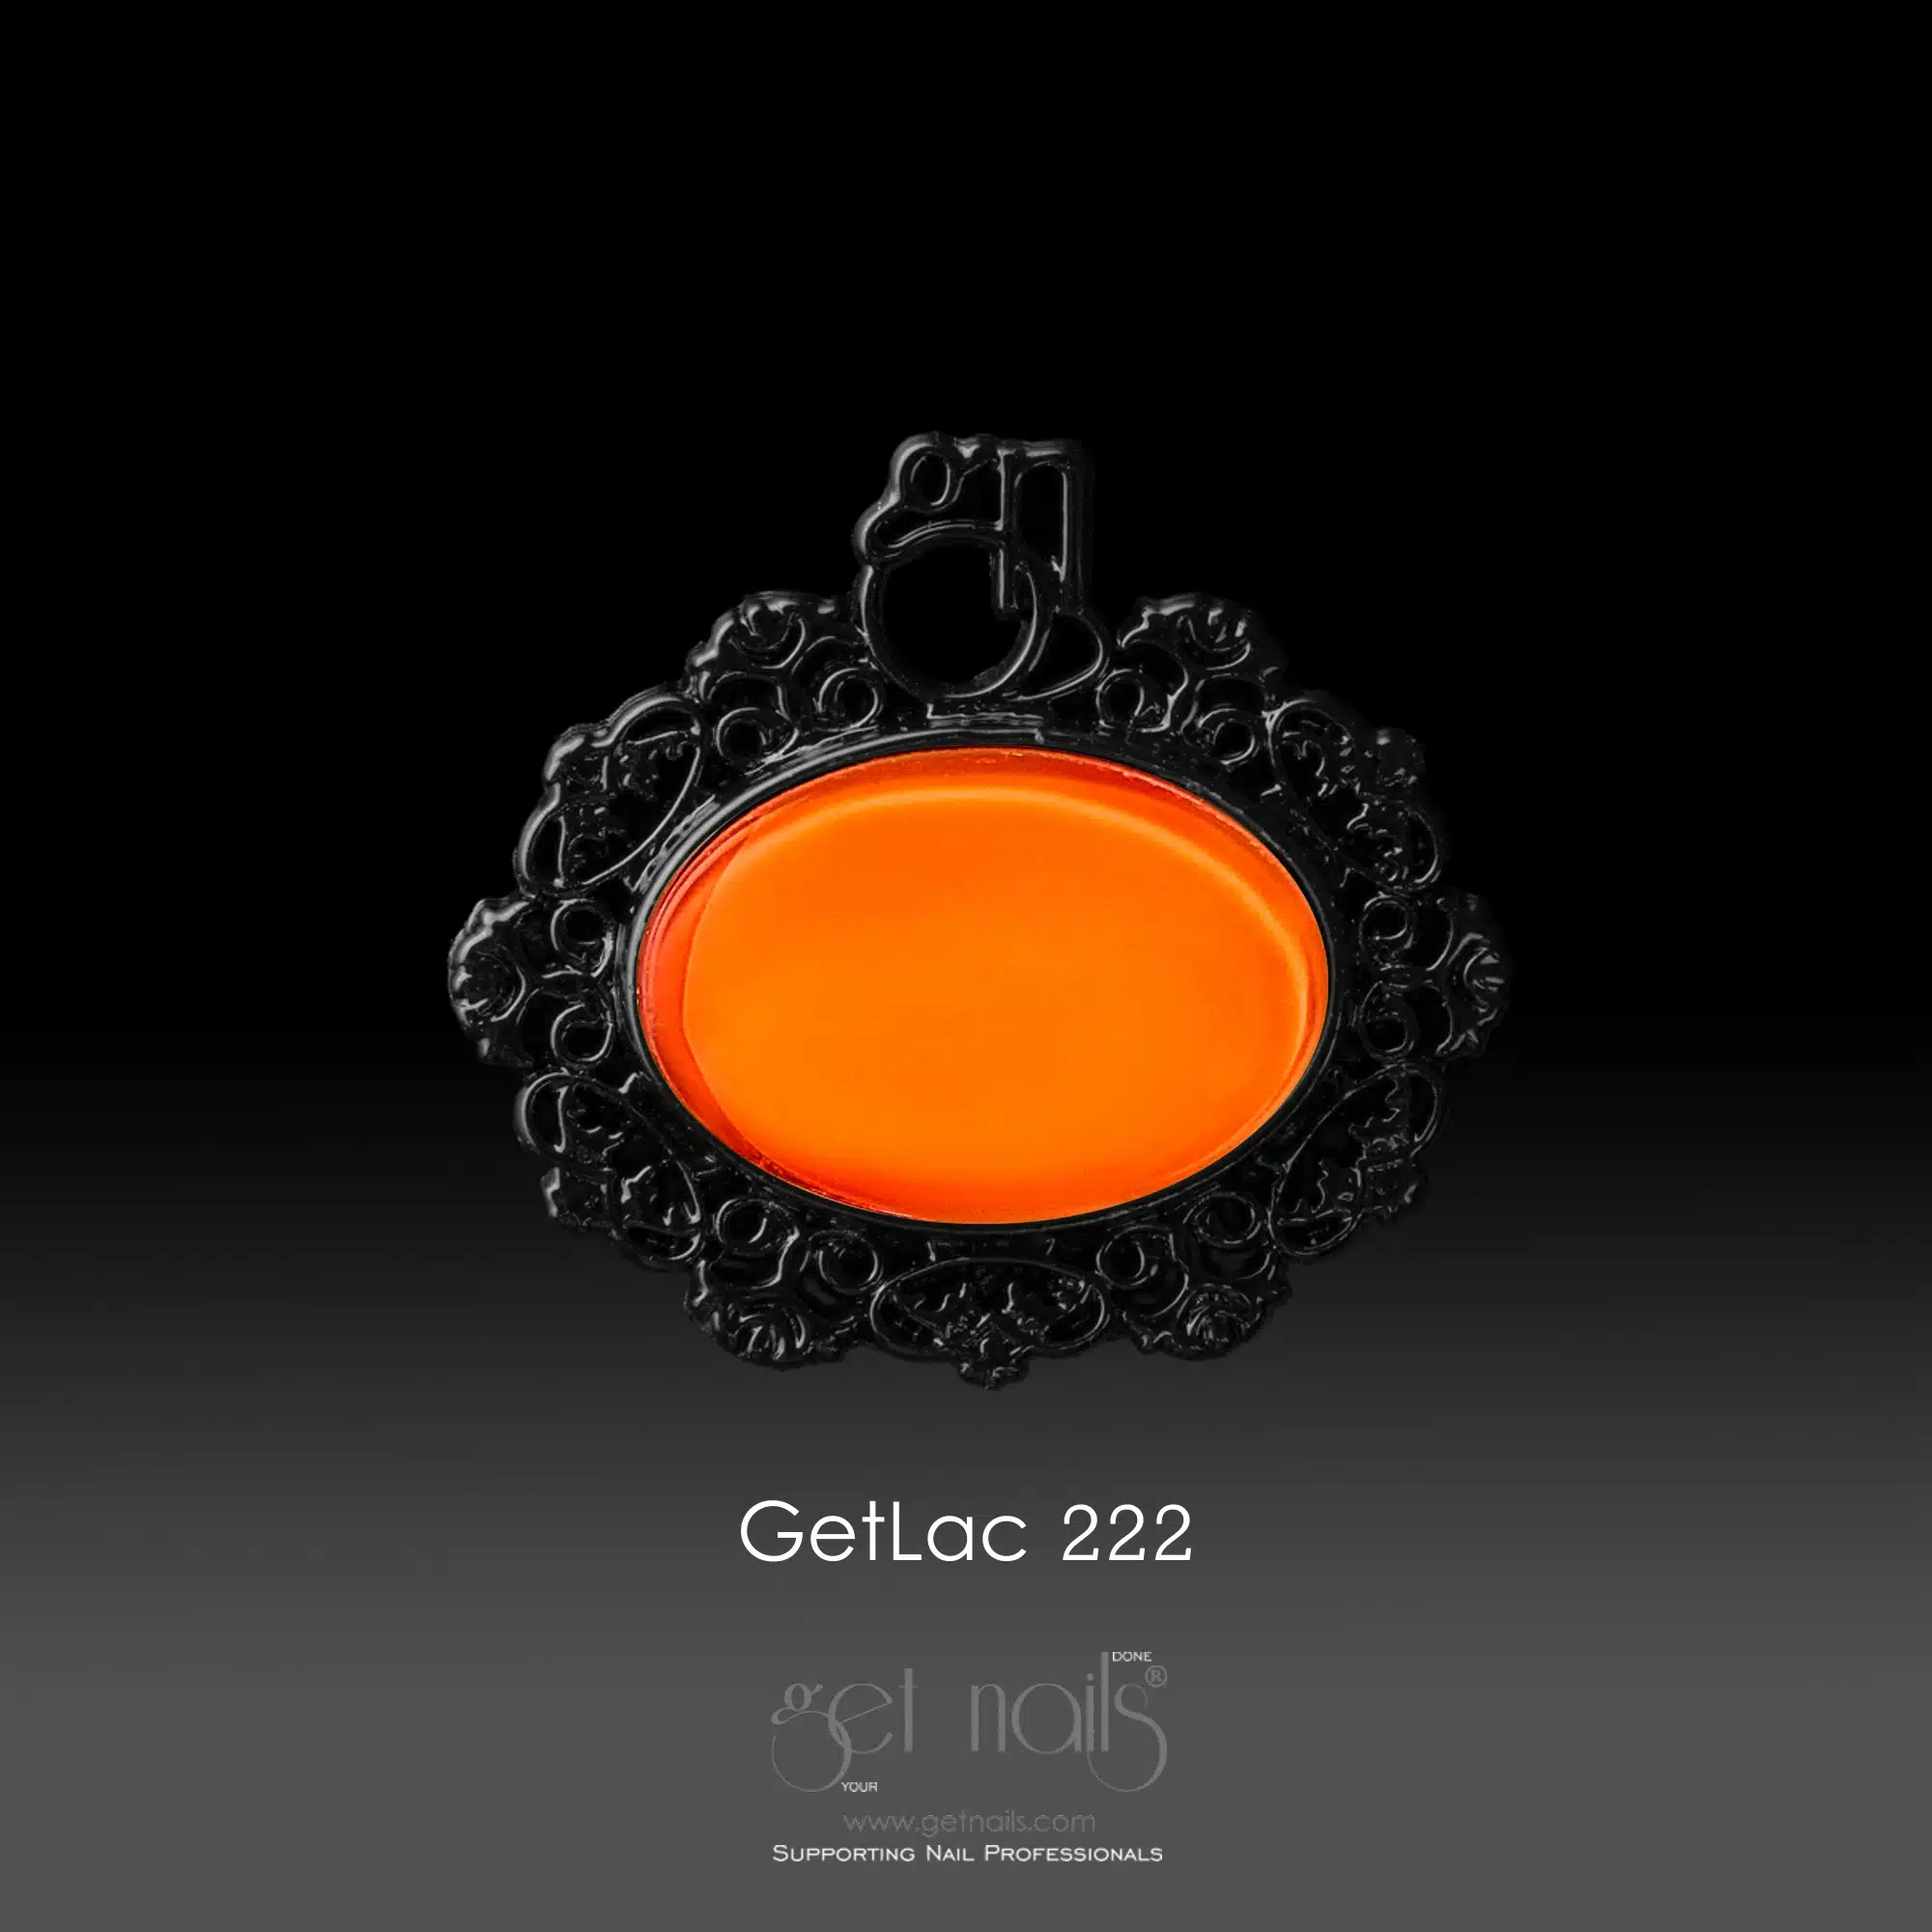 Get Nails Austria - GetLac 222 Neon Orange 15g